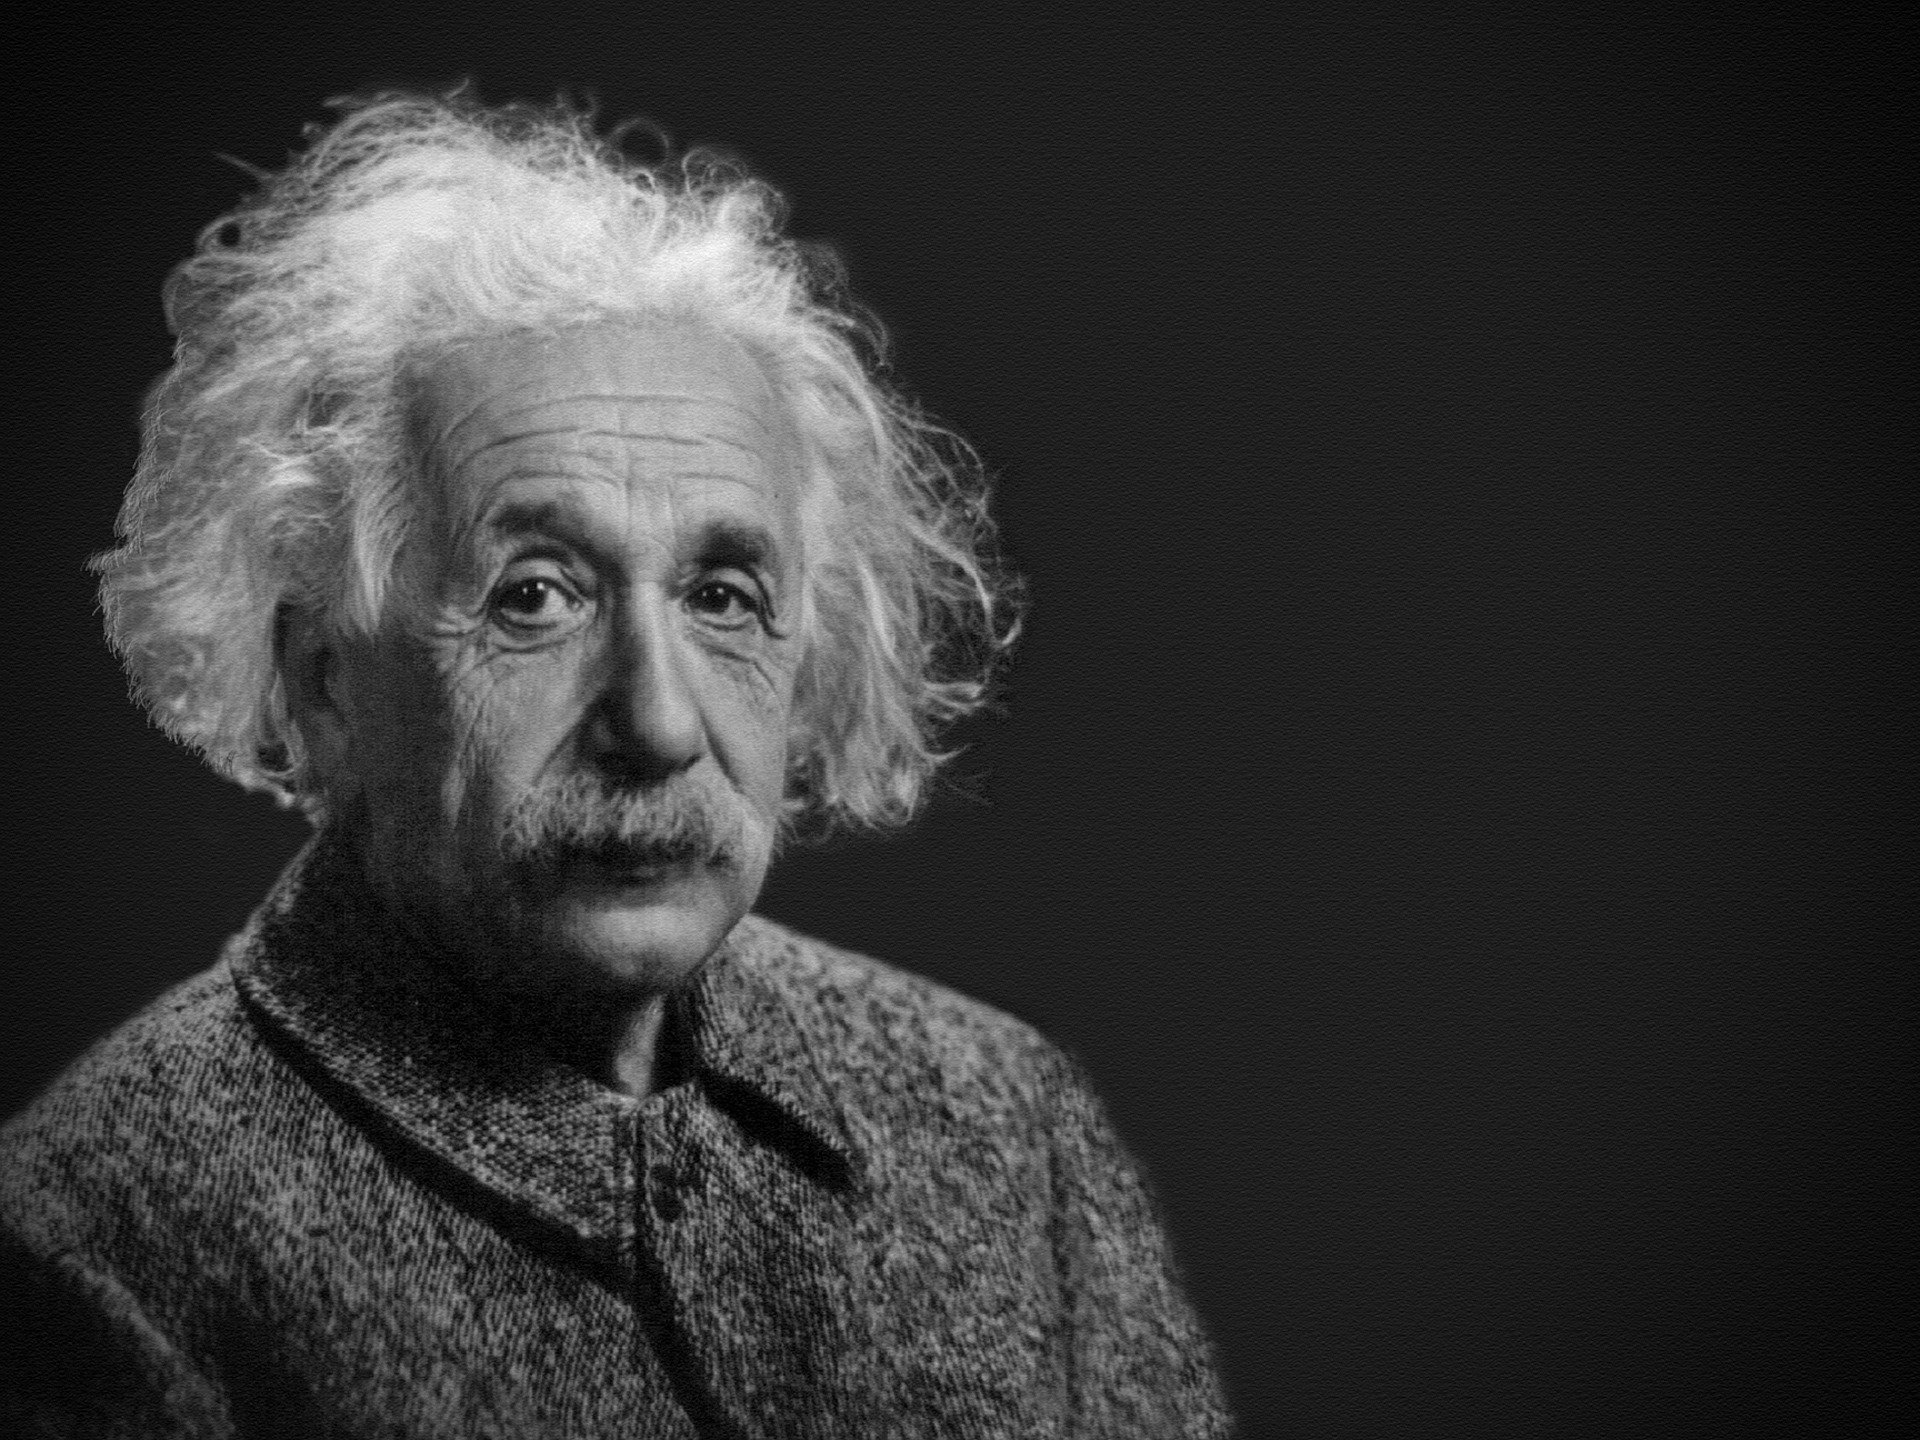 A portrait of Albert Einstein. | Source: Pixabay/ParentRap